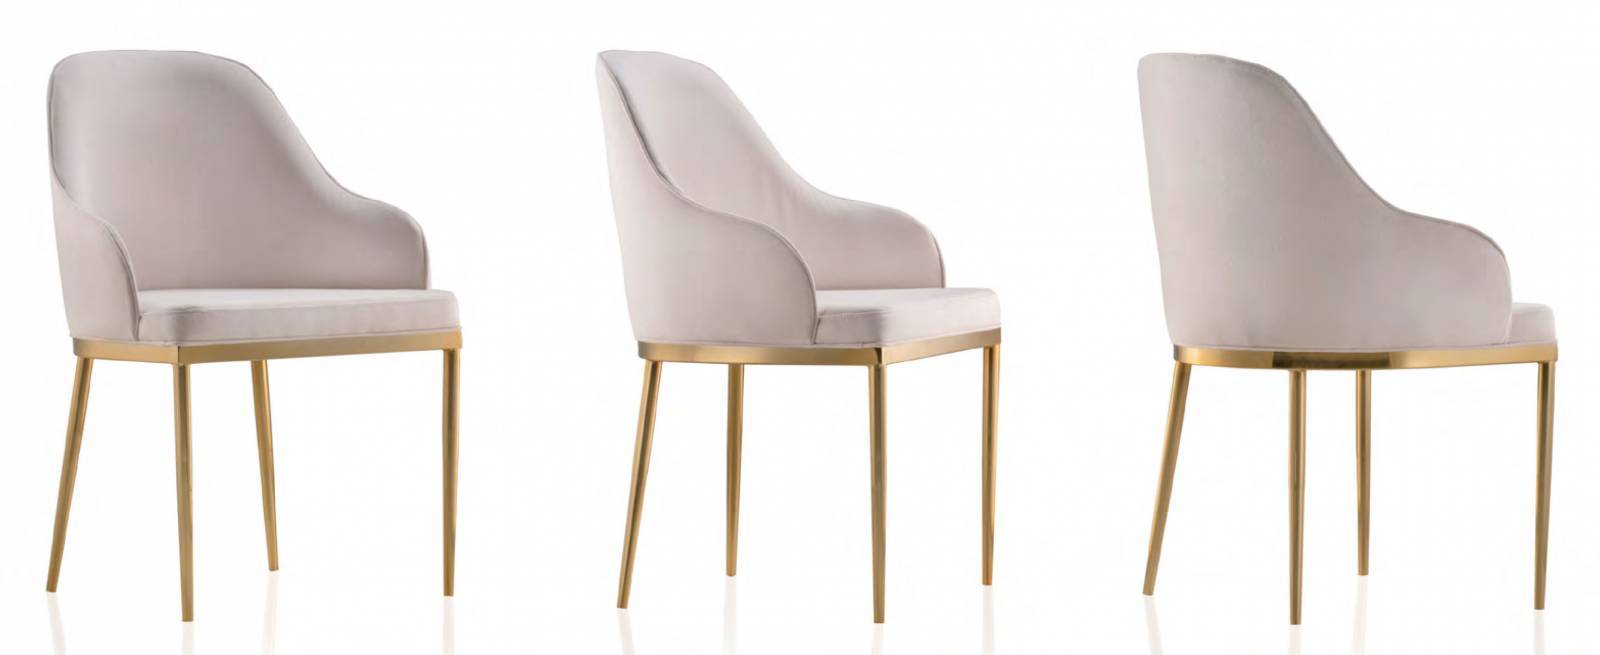 Cadeira Greca Bell Design - All Home